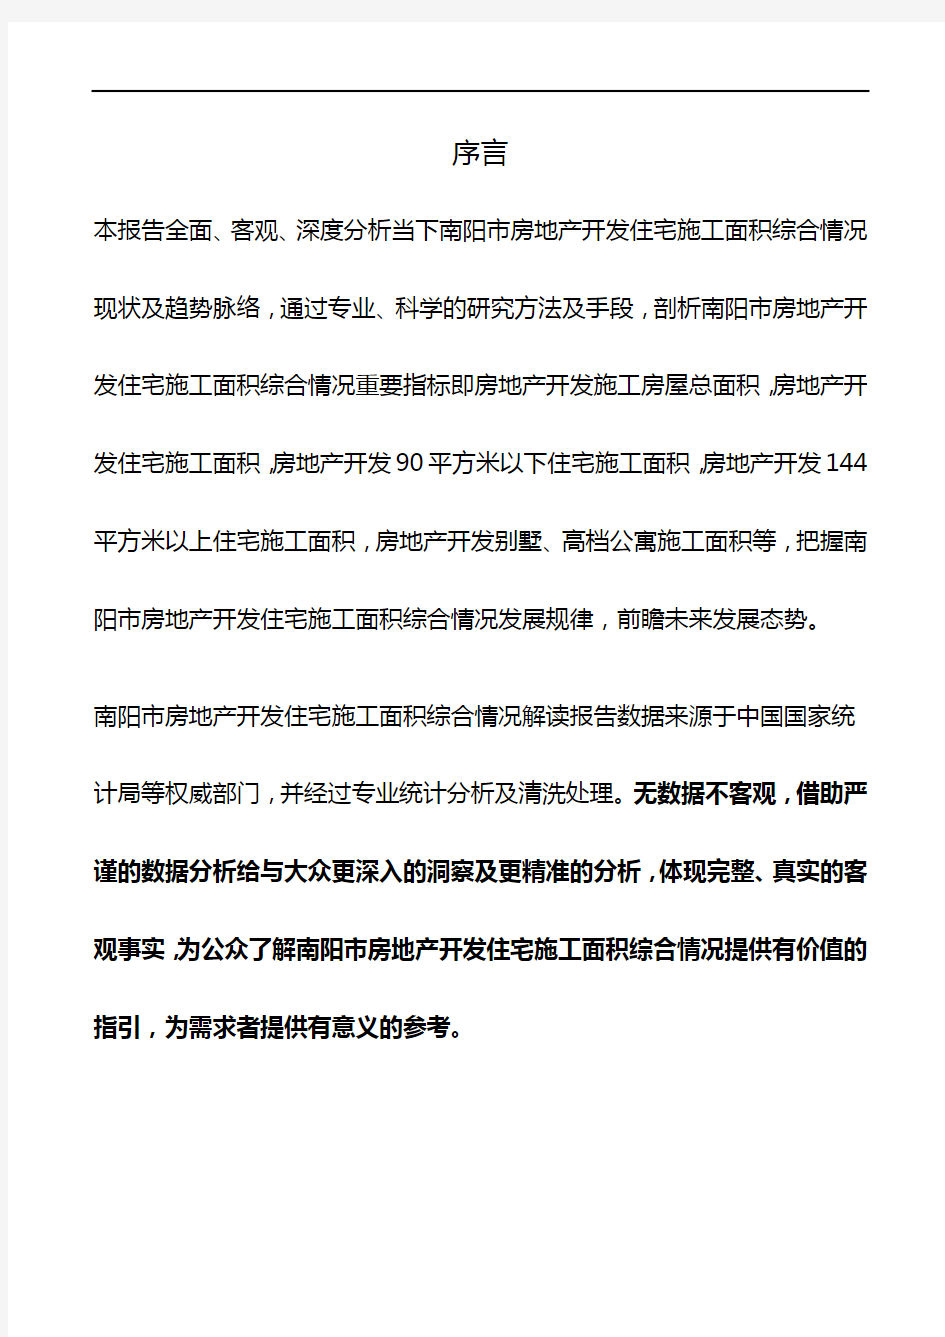 河南省南阳市房地产开发住宅施工面积综合情况数据解读报告2019版